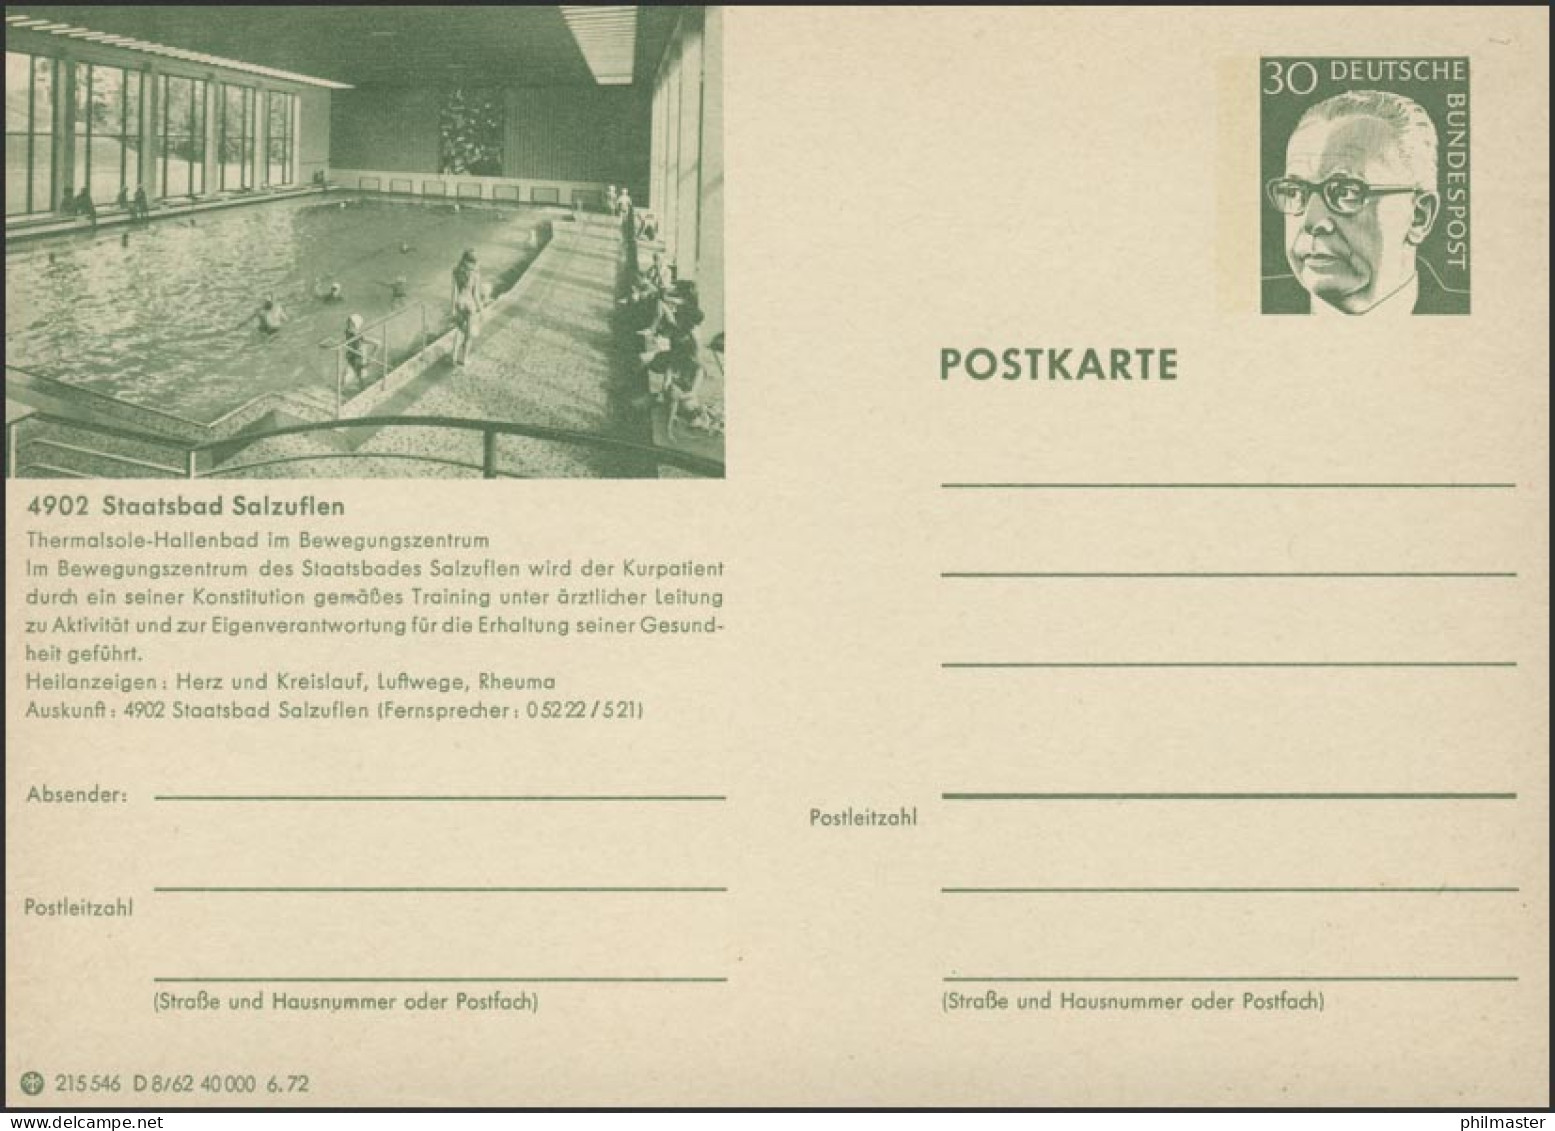 P108-D08/062 4902 Bad Salzuflen, Hallenbecken ** - Illustrated Postcards - Mint